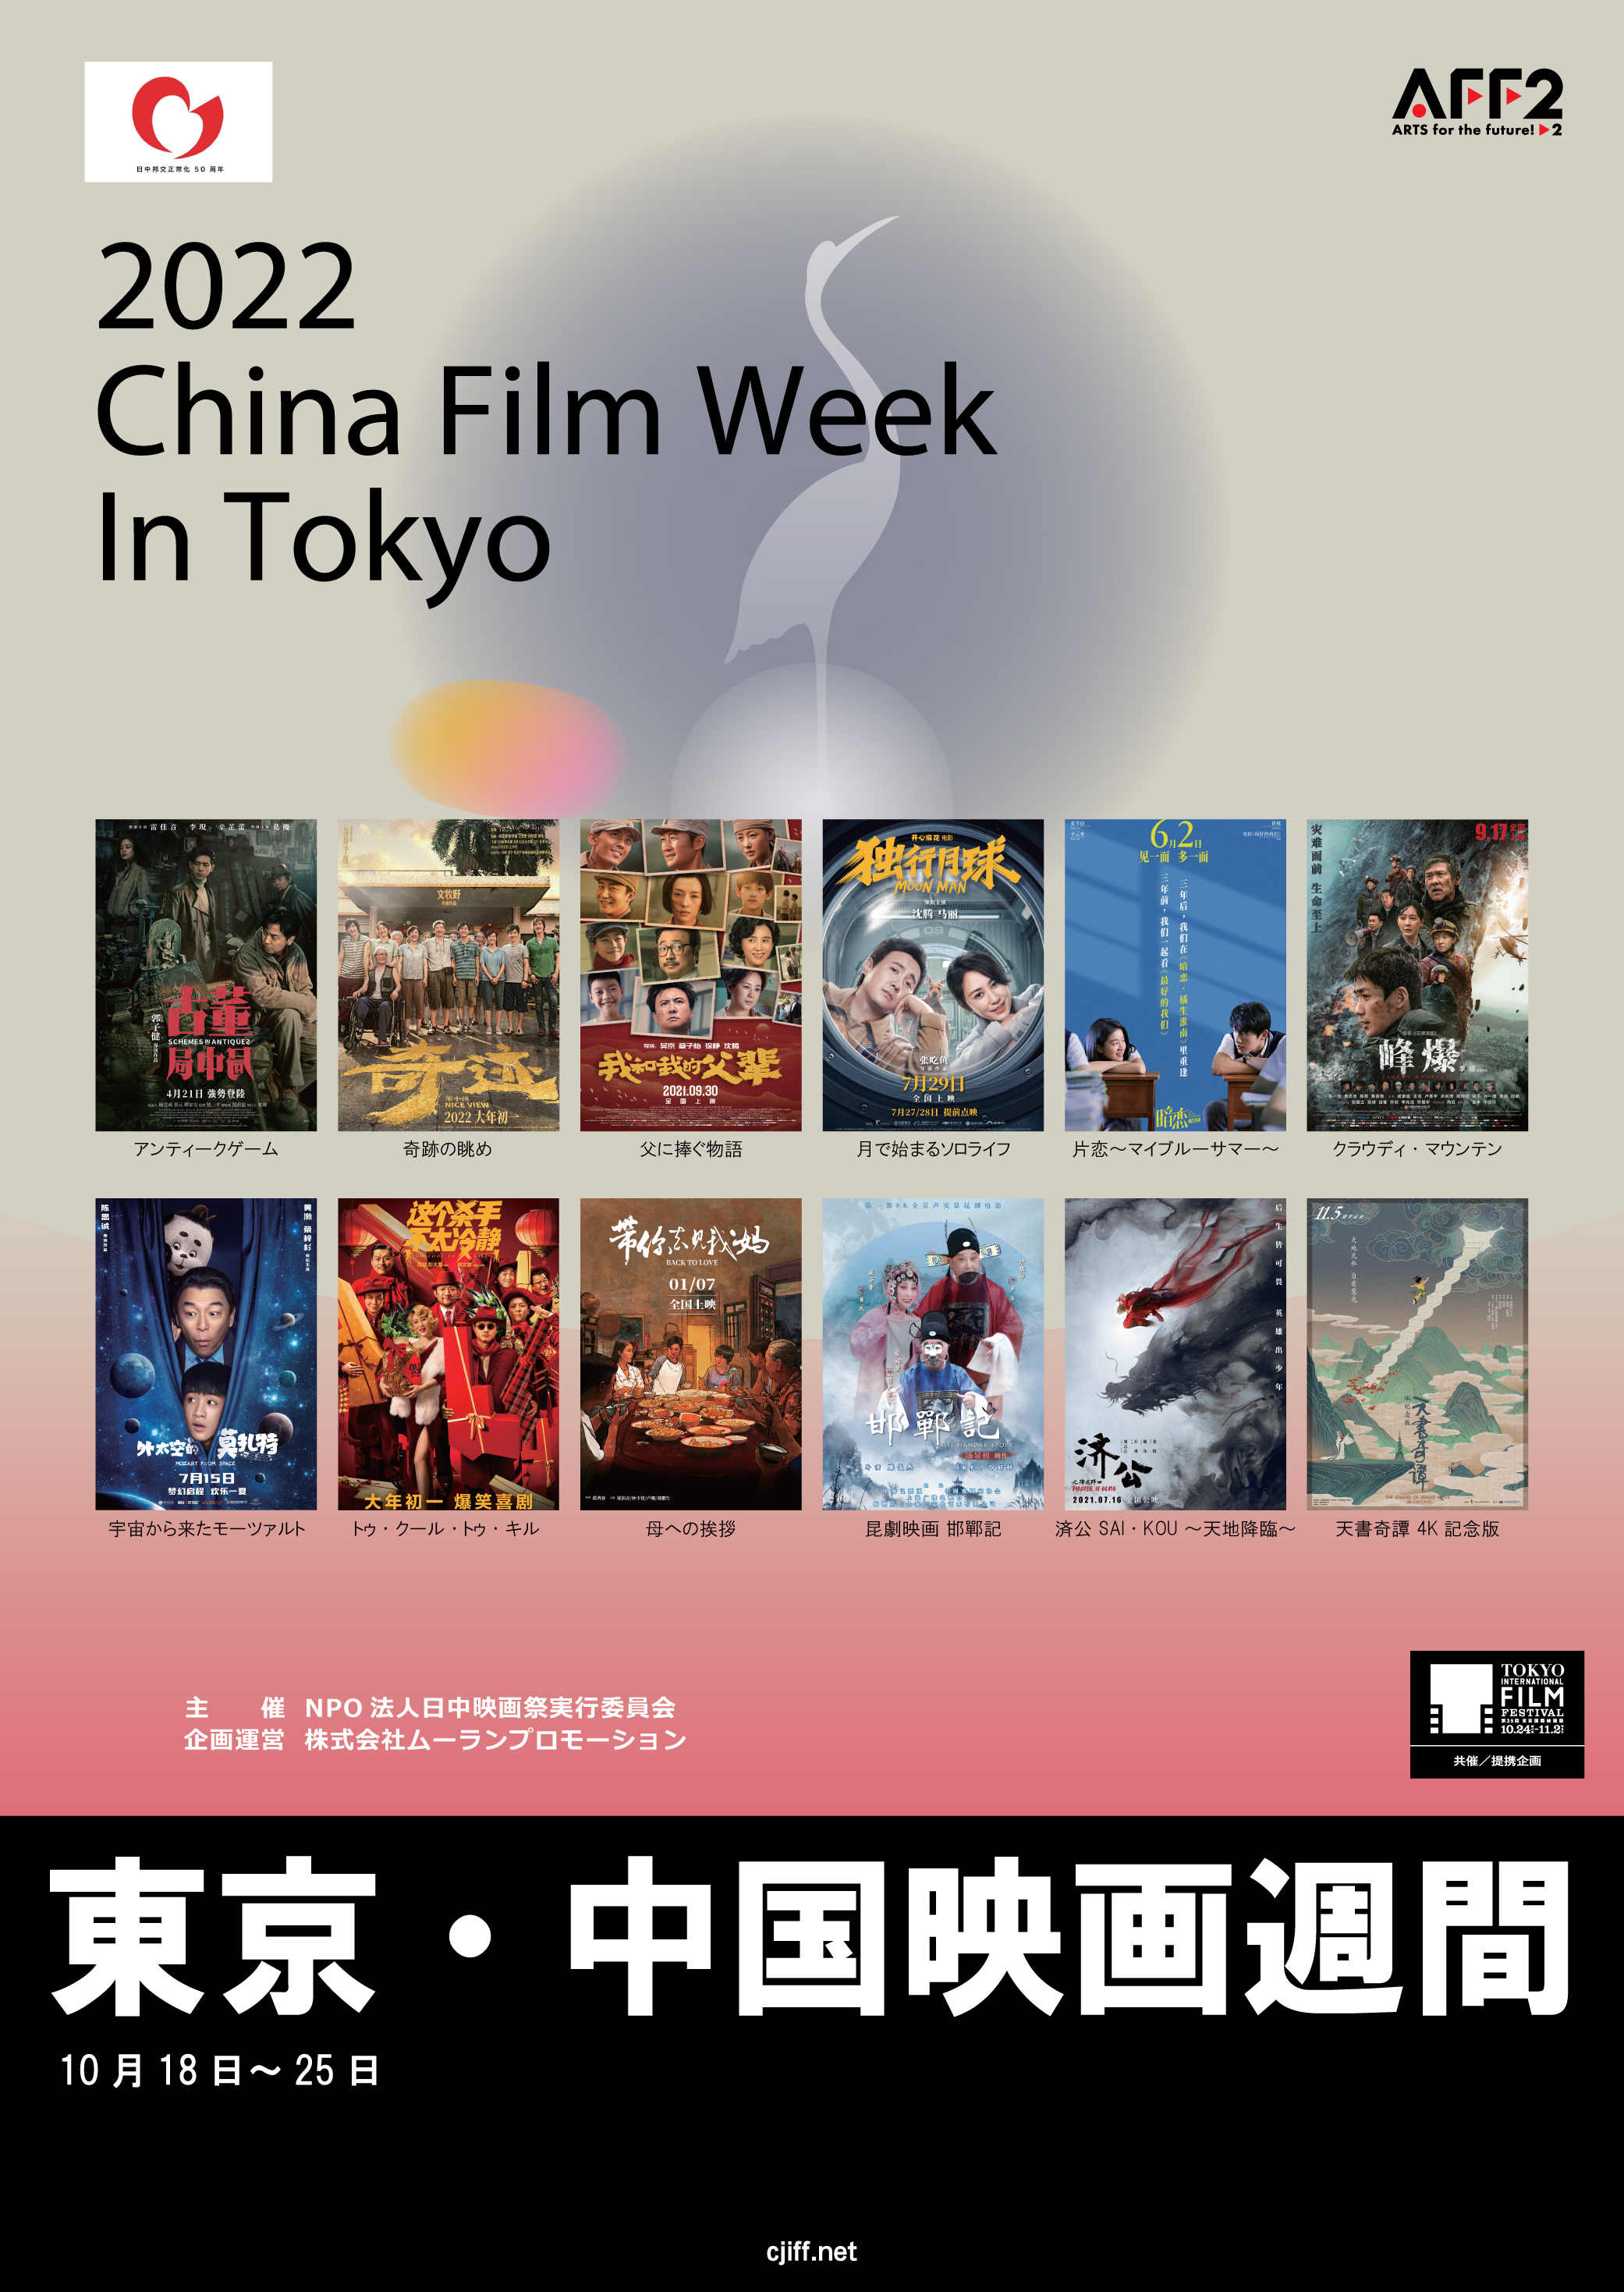 近年急成長した中国映画がアツい！最新作・話題作を一挙上映　
東京国際映画祭提携イベント「中国映画週間」10/18より開催